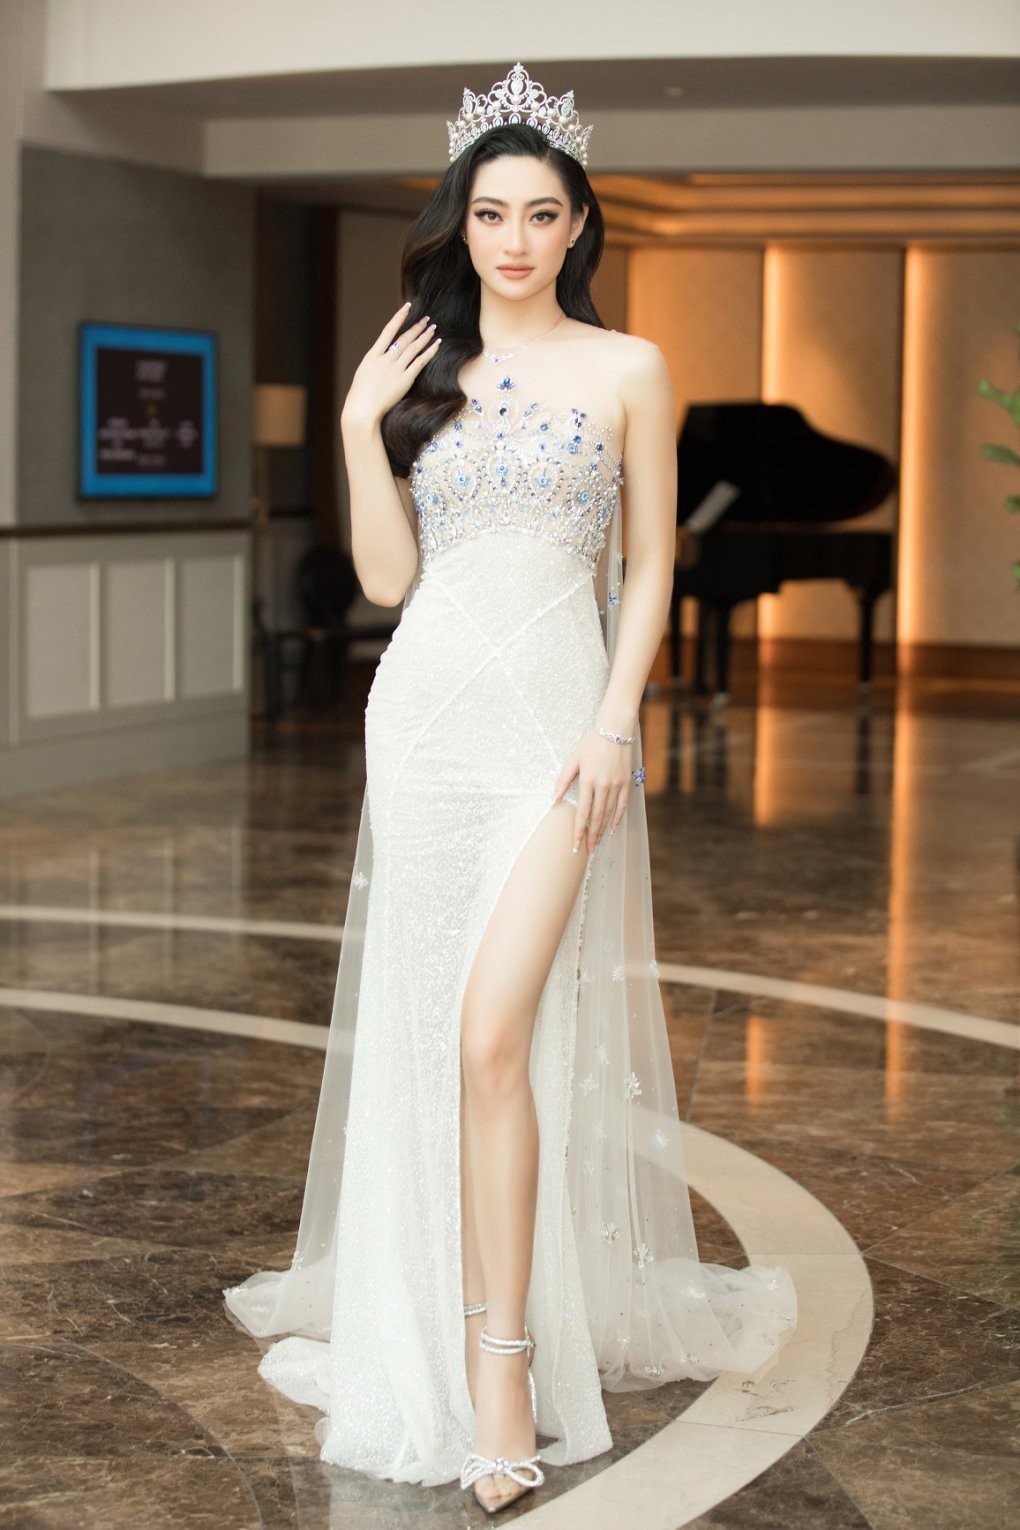 Thời trang thanh lịch và cá tính của Lương Thùy Linh sau nhiệm kỳ Hoa hậu Thế giới Việt Nam